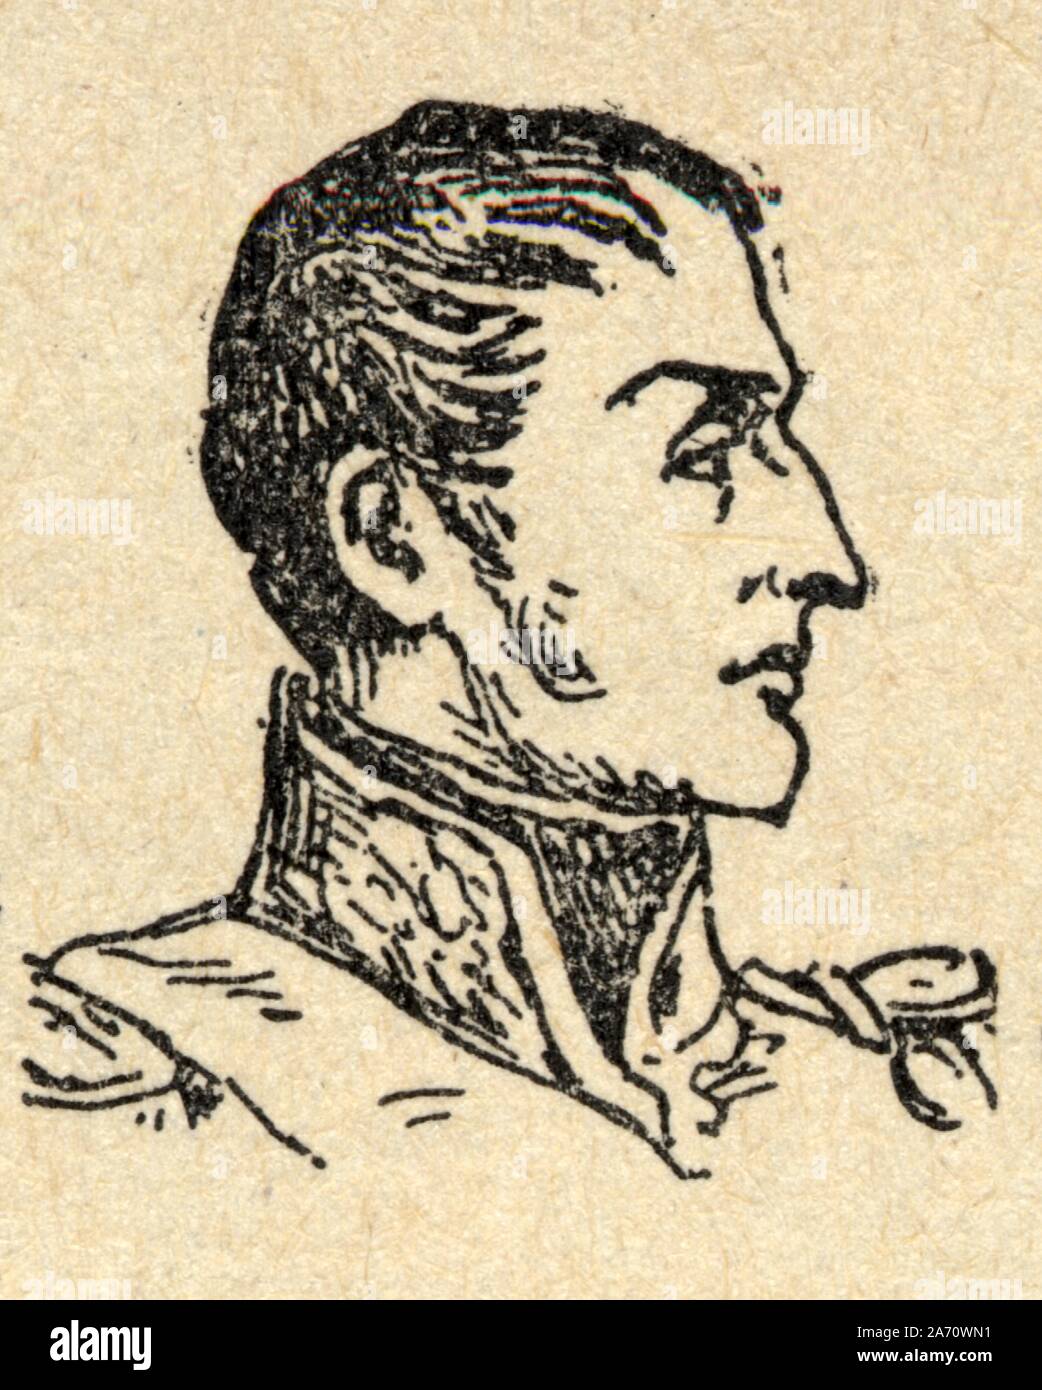 Nicolas Charles Marie Oudinot, duc de Reggio, né Le 25 avril 1767 à-Bar-le-Duc, mort Le 13 Juin 1847 à Paris, est un Général français de la Révol Stockfoto